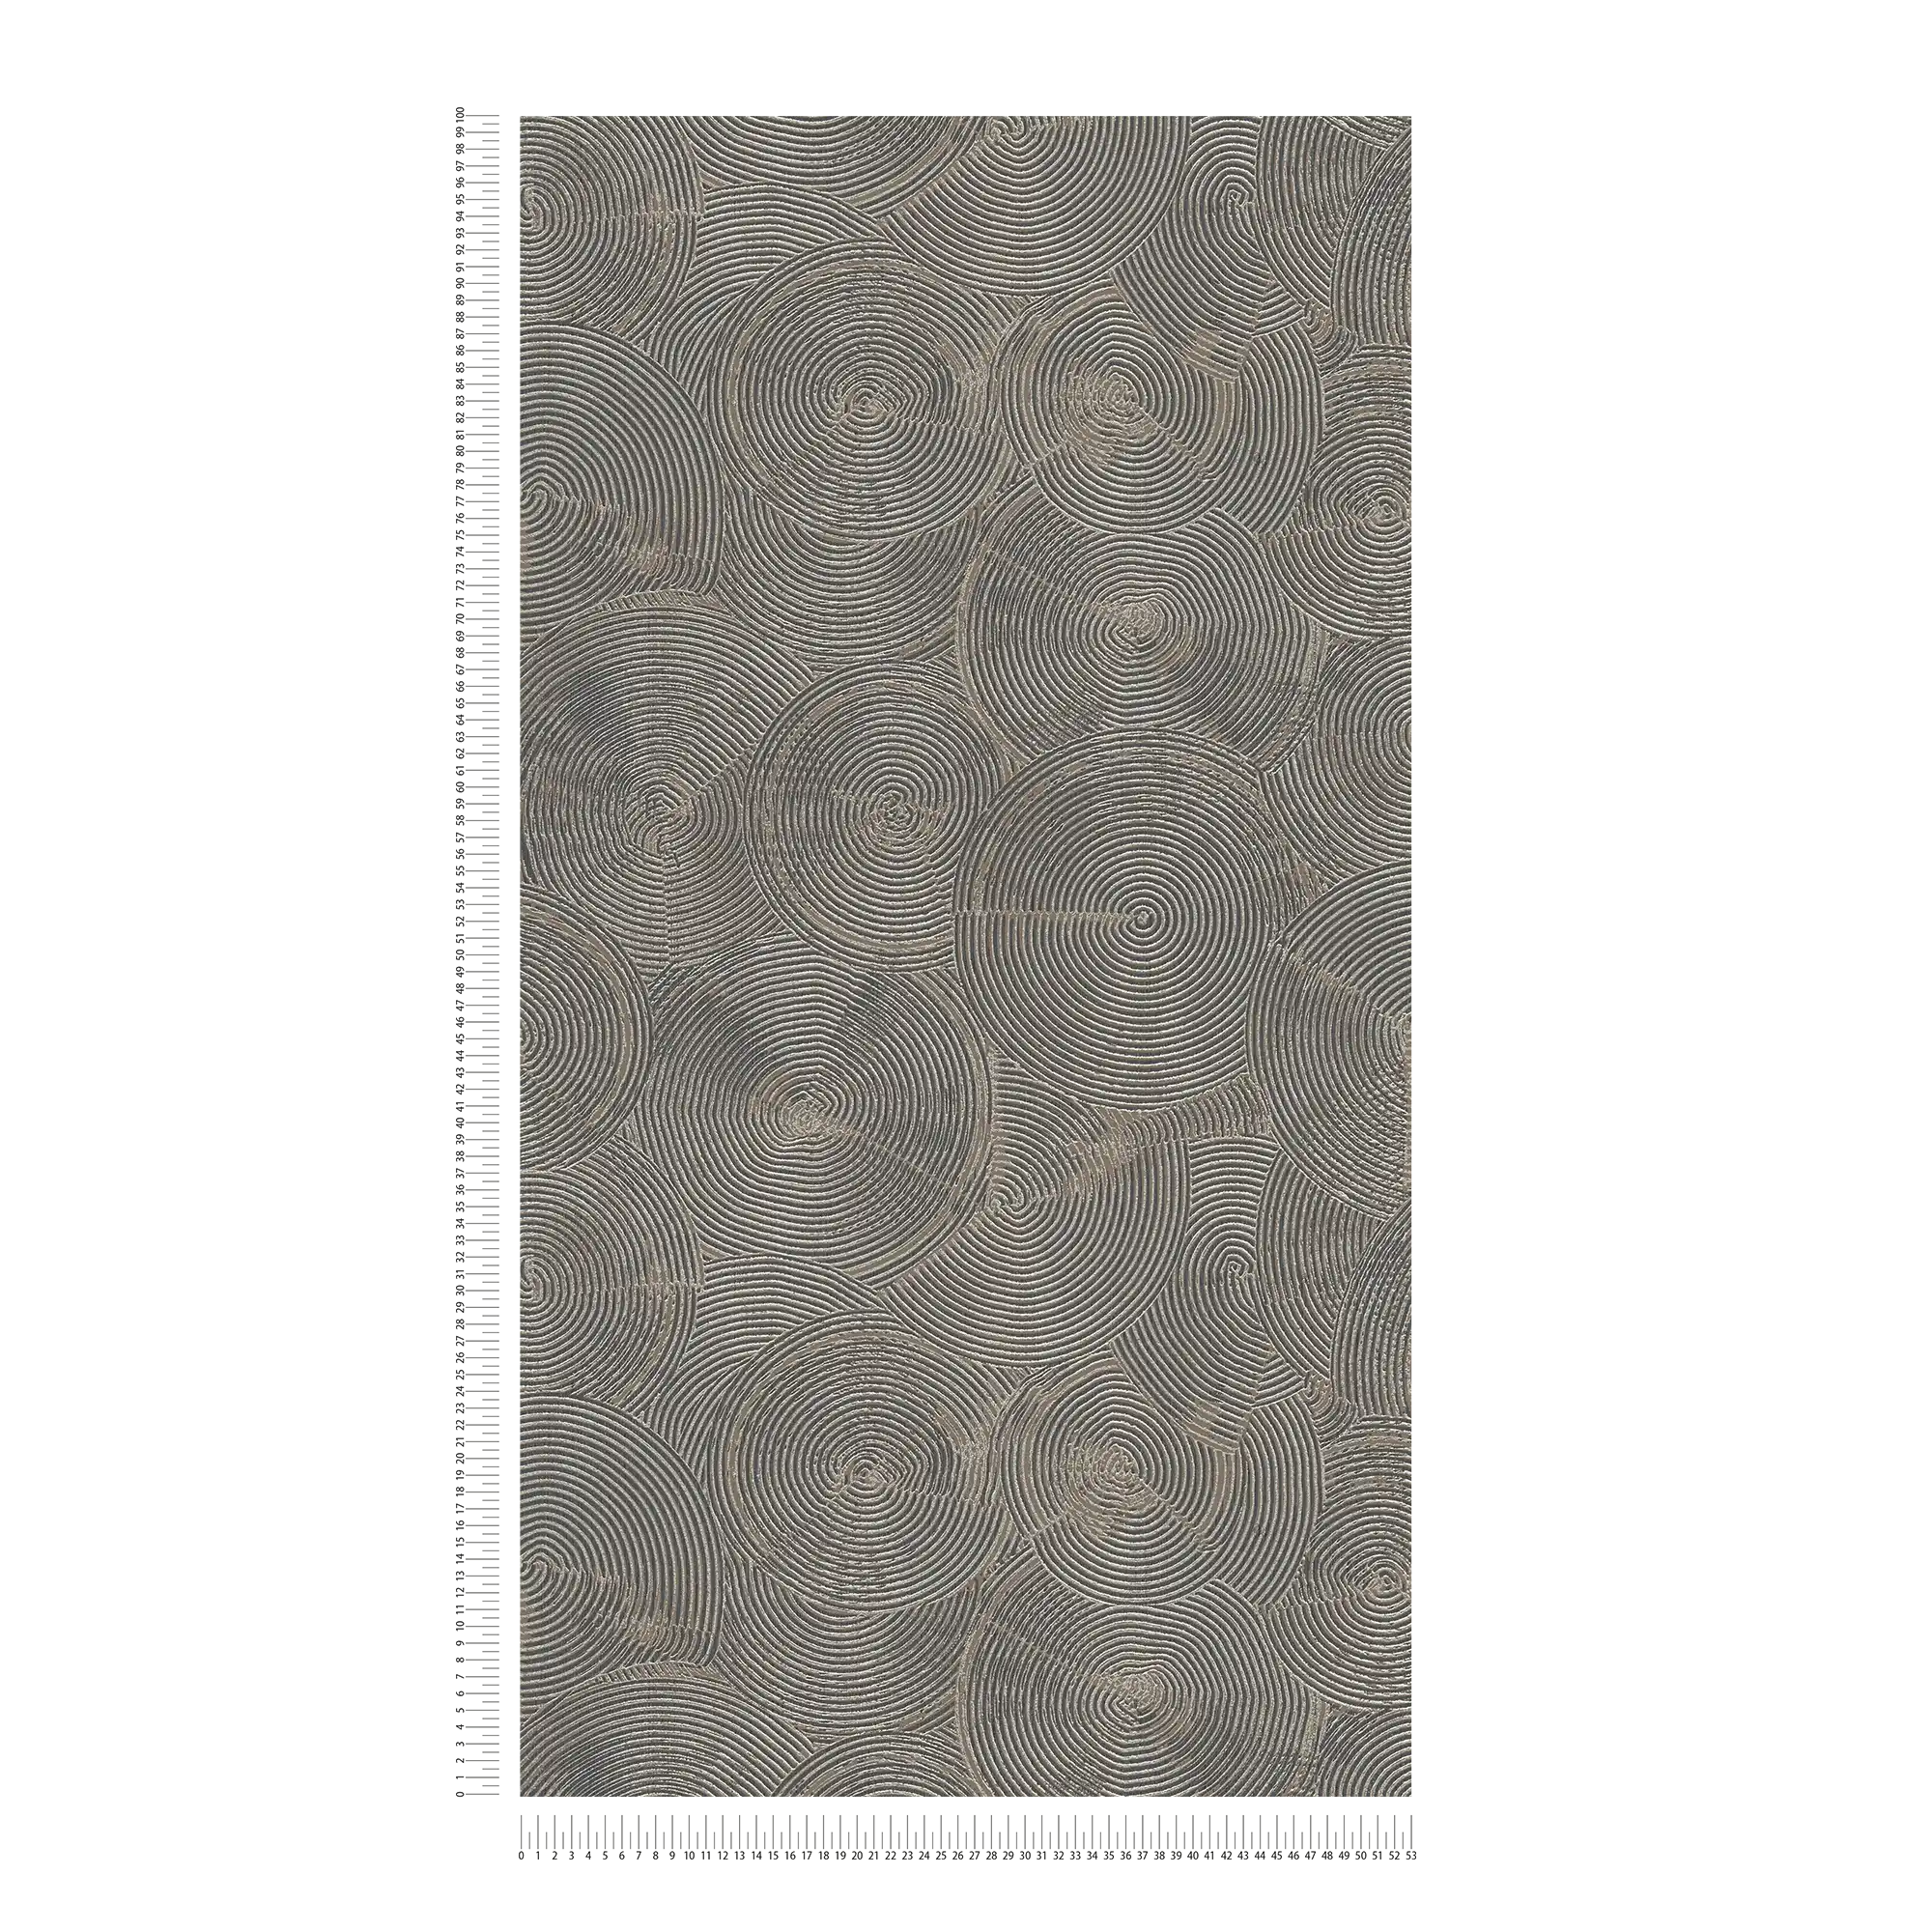             Papier peint aspect plâtre moderne avec effet métallique - marron, métallique, noir
        